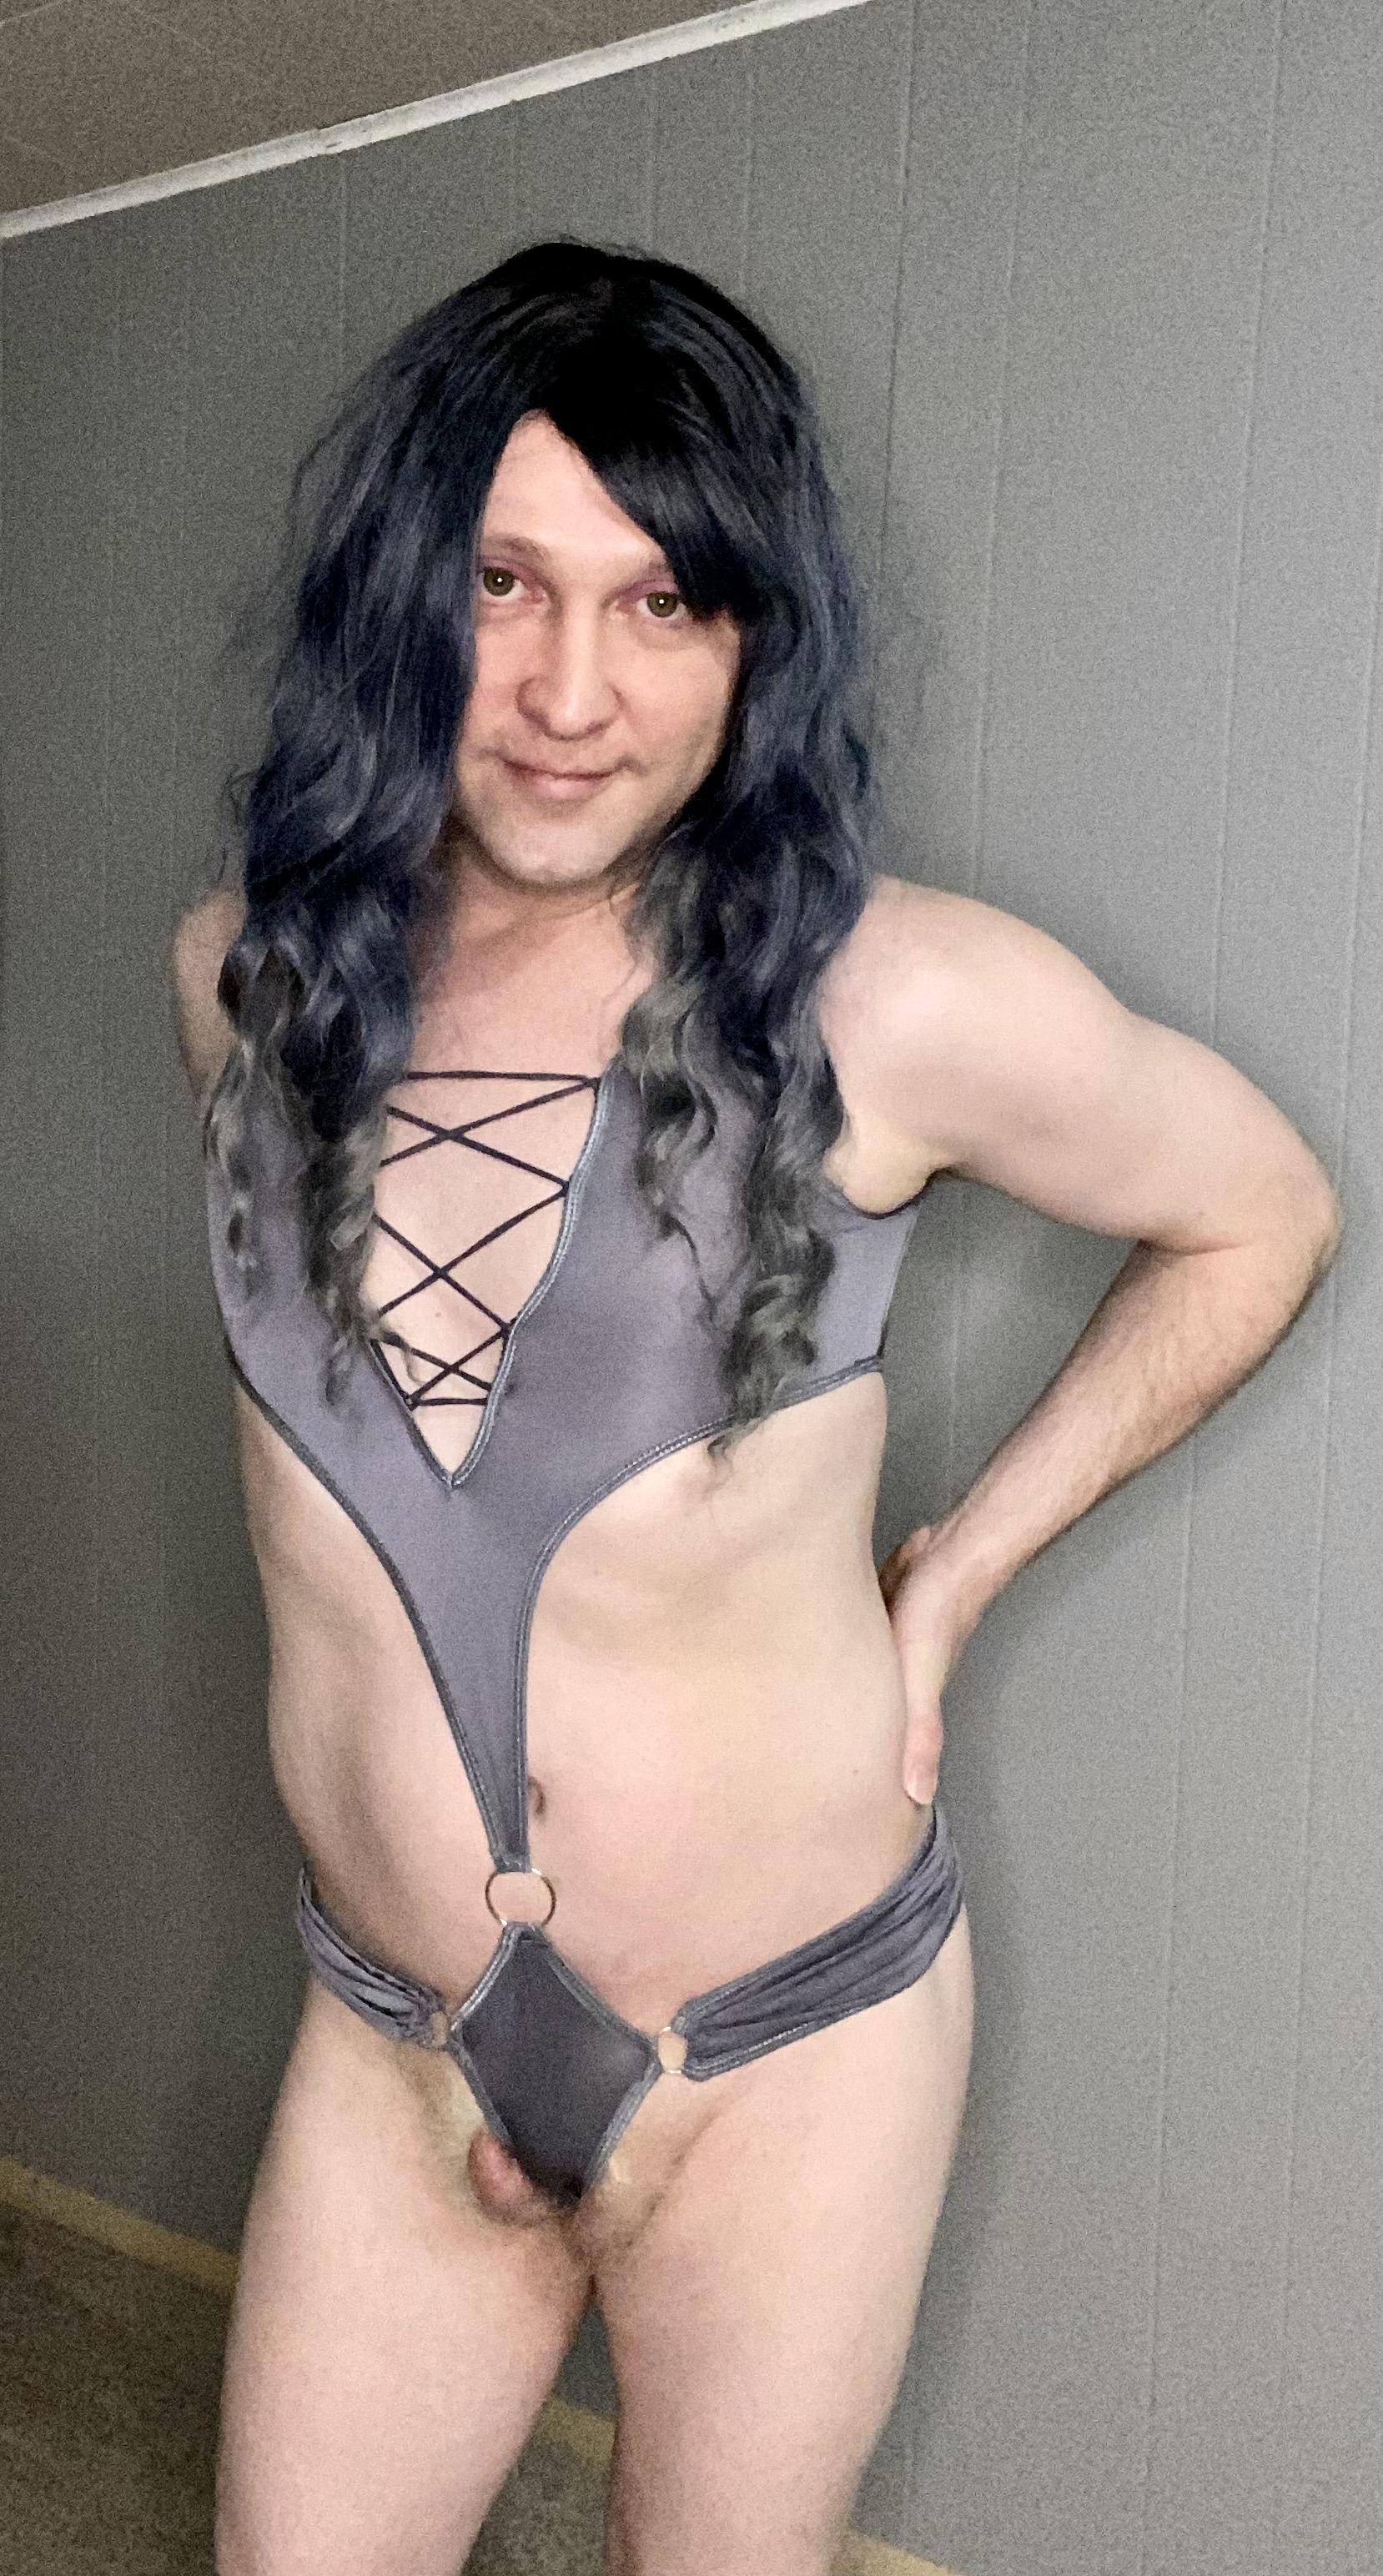 Me in lingerie